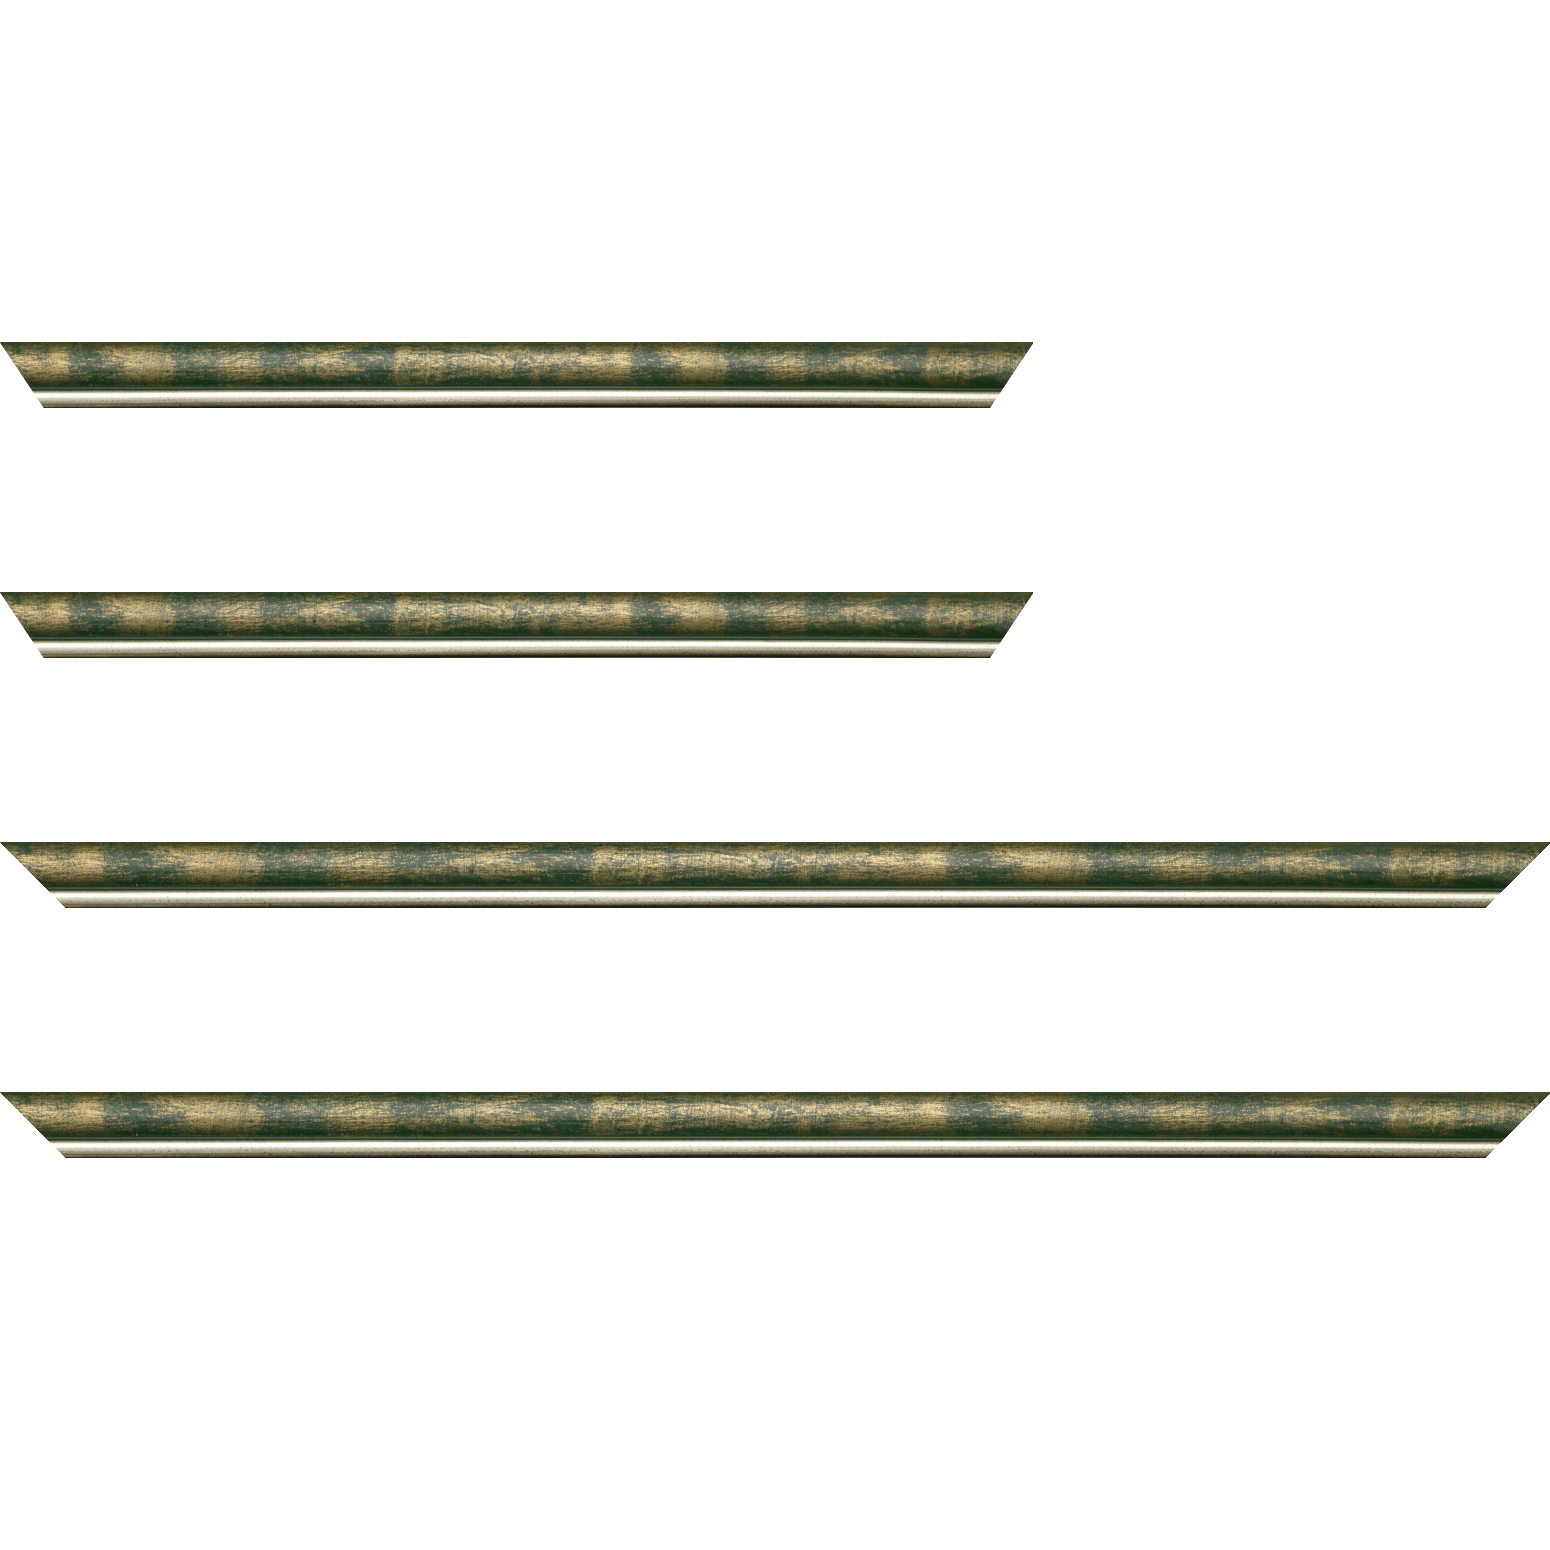 Baguette bois profil arrondi largeur 2.1cm  couleur vert fond or filet argent chaud - 25x25